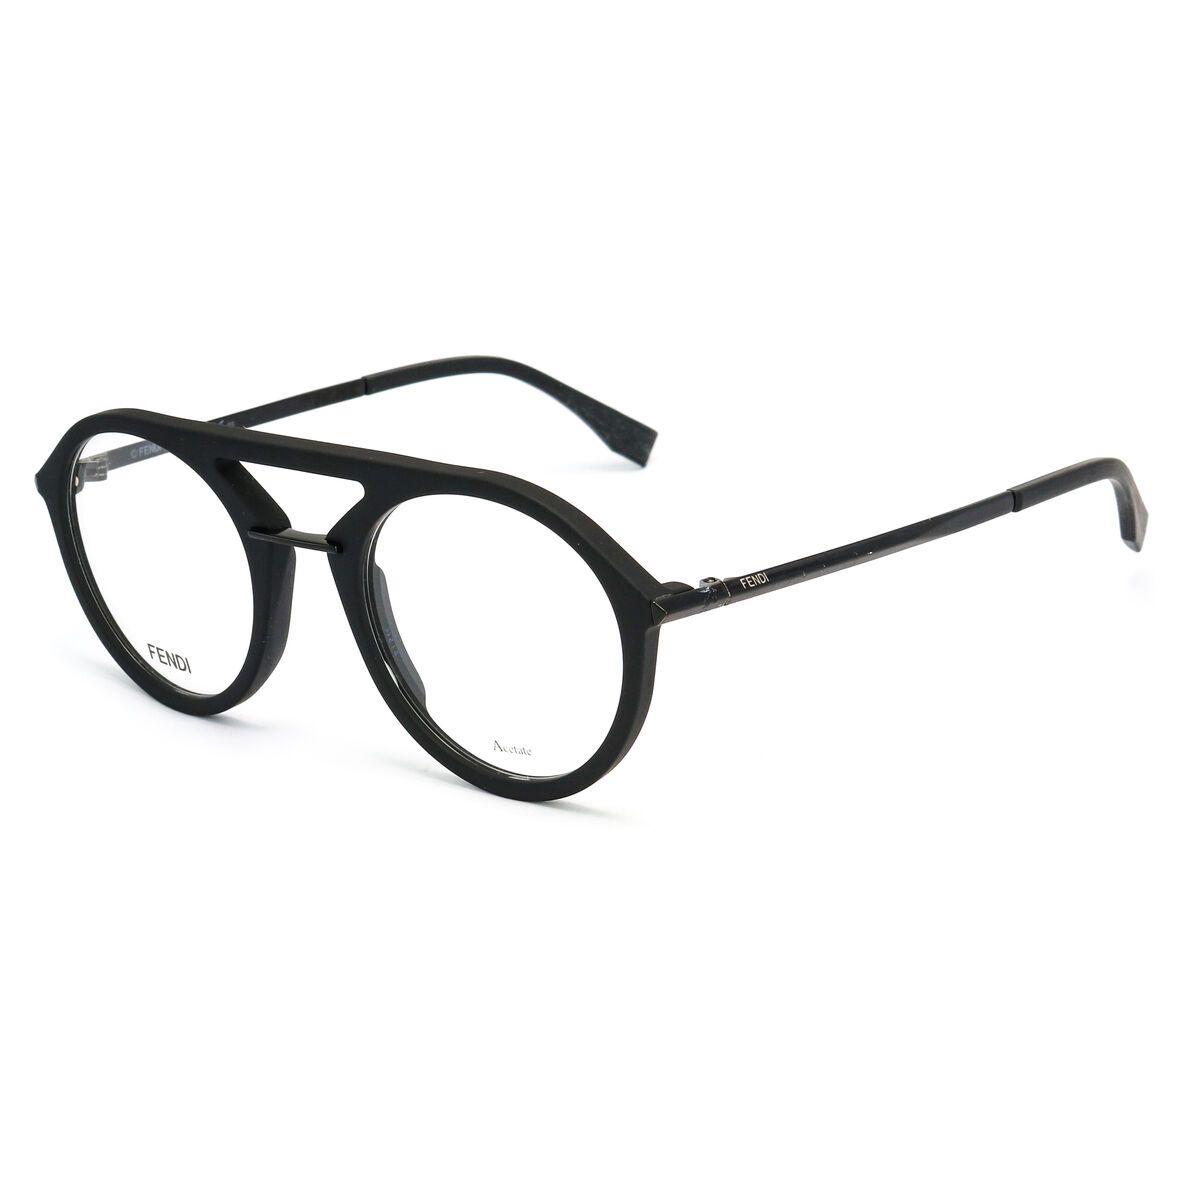 FFM0034 Round Eyeglasses 3 - size  55